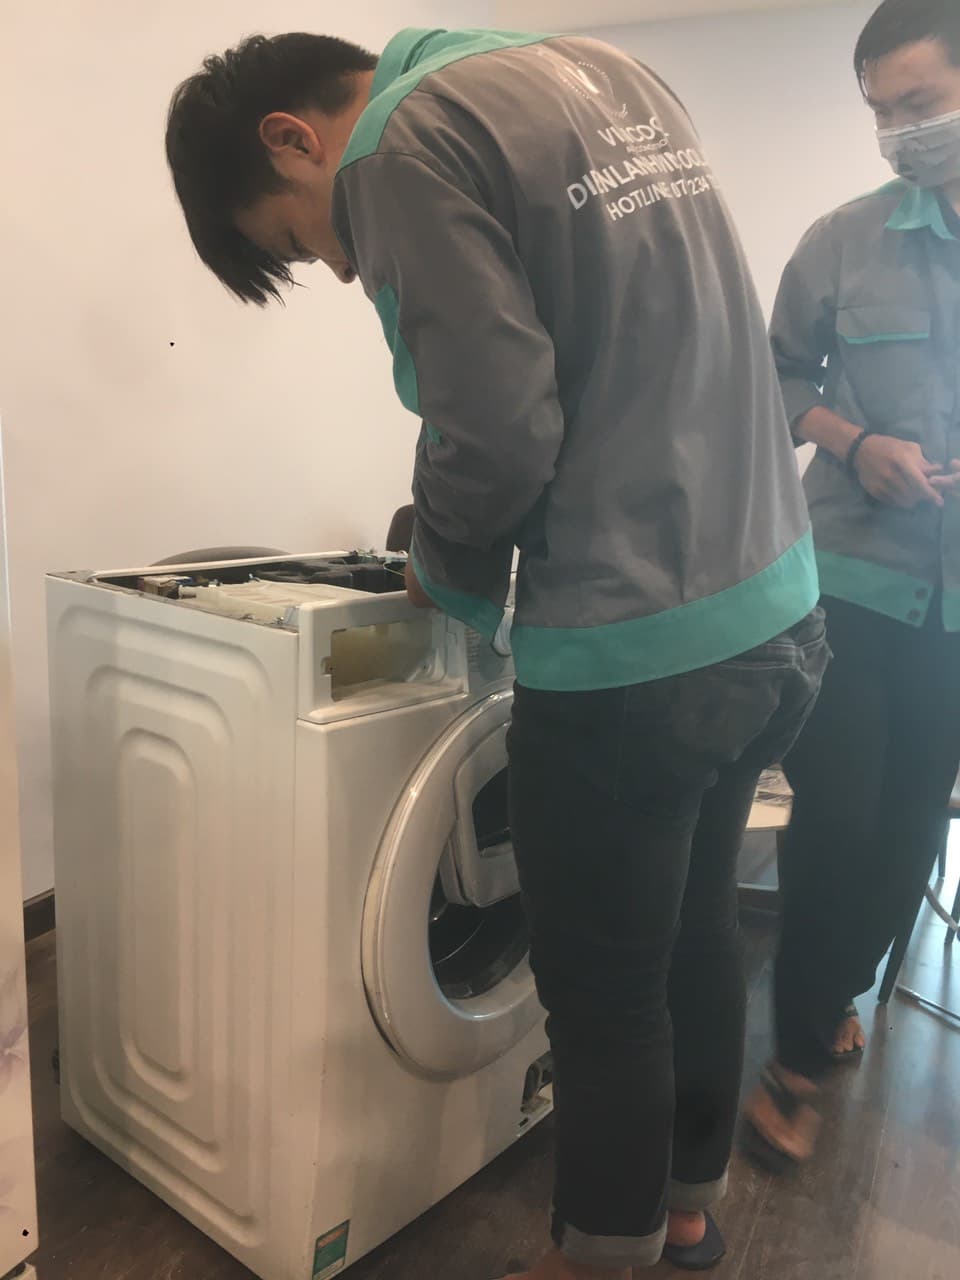 Vệ sinh máy giặt quận Thủ Đức có mặt trong 30 phút